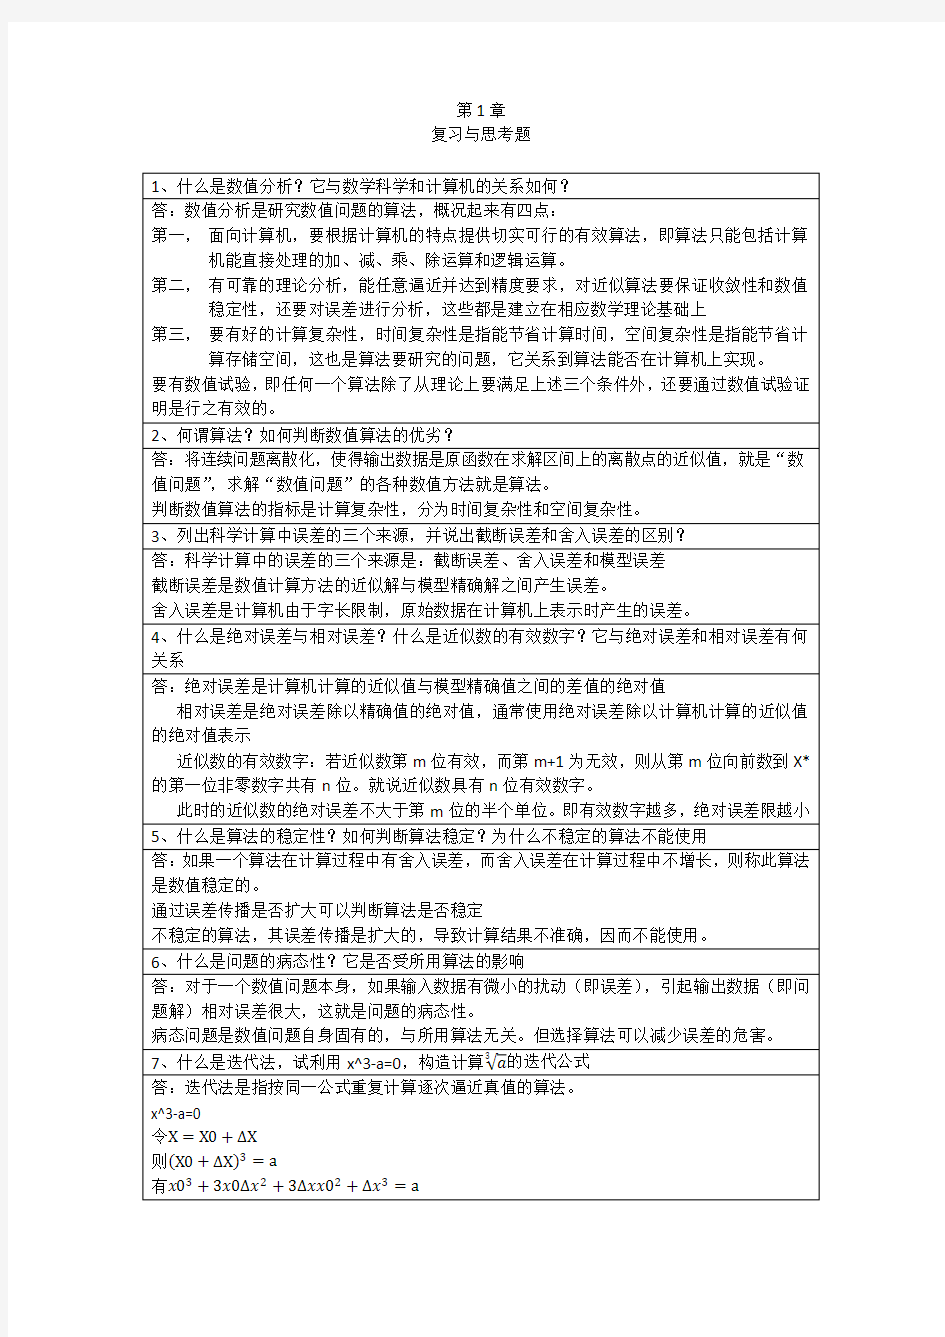 李庆扬-数值分析第五版第1章习题答案(20130622)